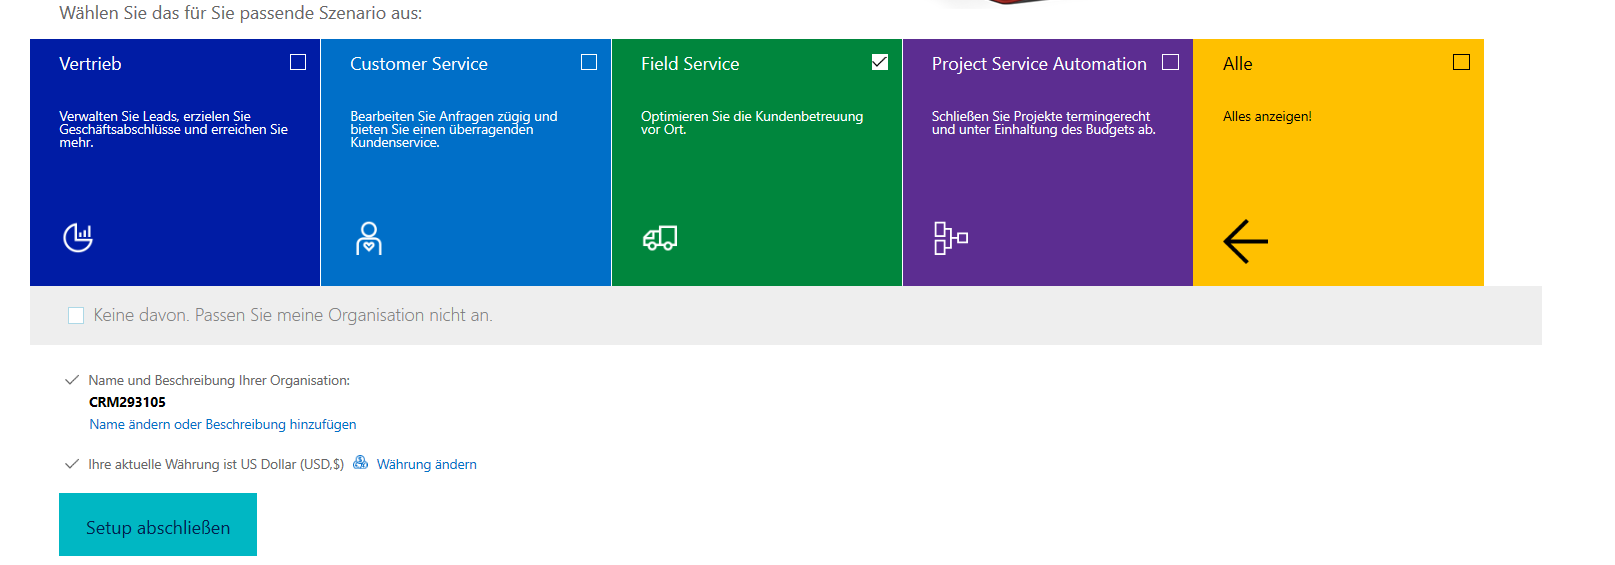 Screenshot von Vertrieb, Kundenservice, Field Service, Project Service Automation und all diesen Optionen, um die Einrichtung abzuschließen